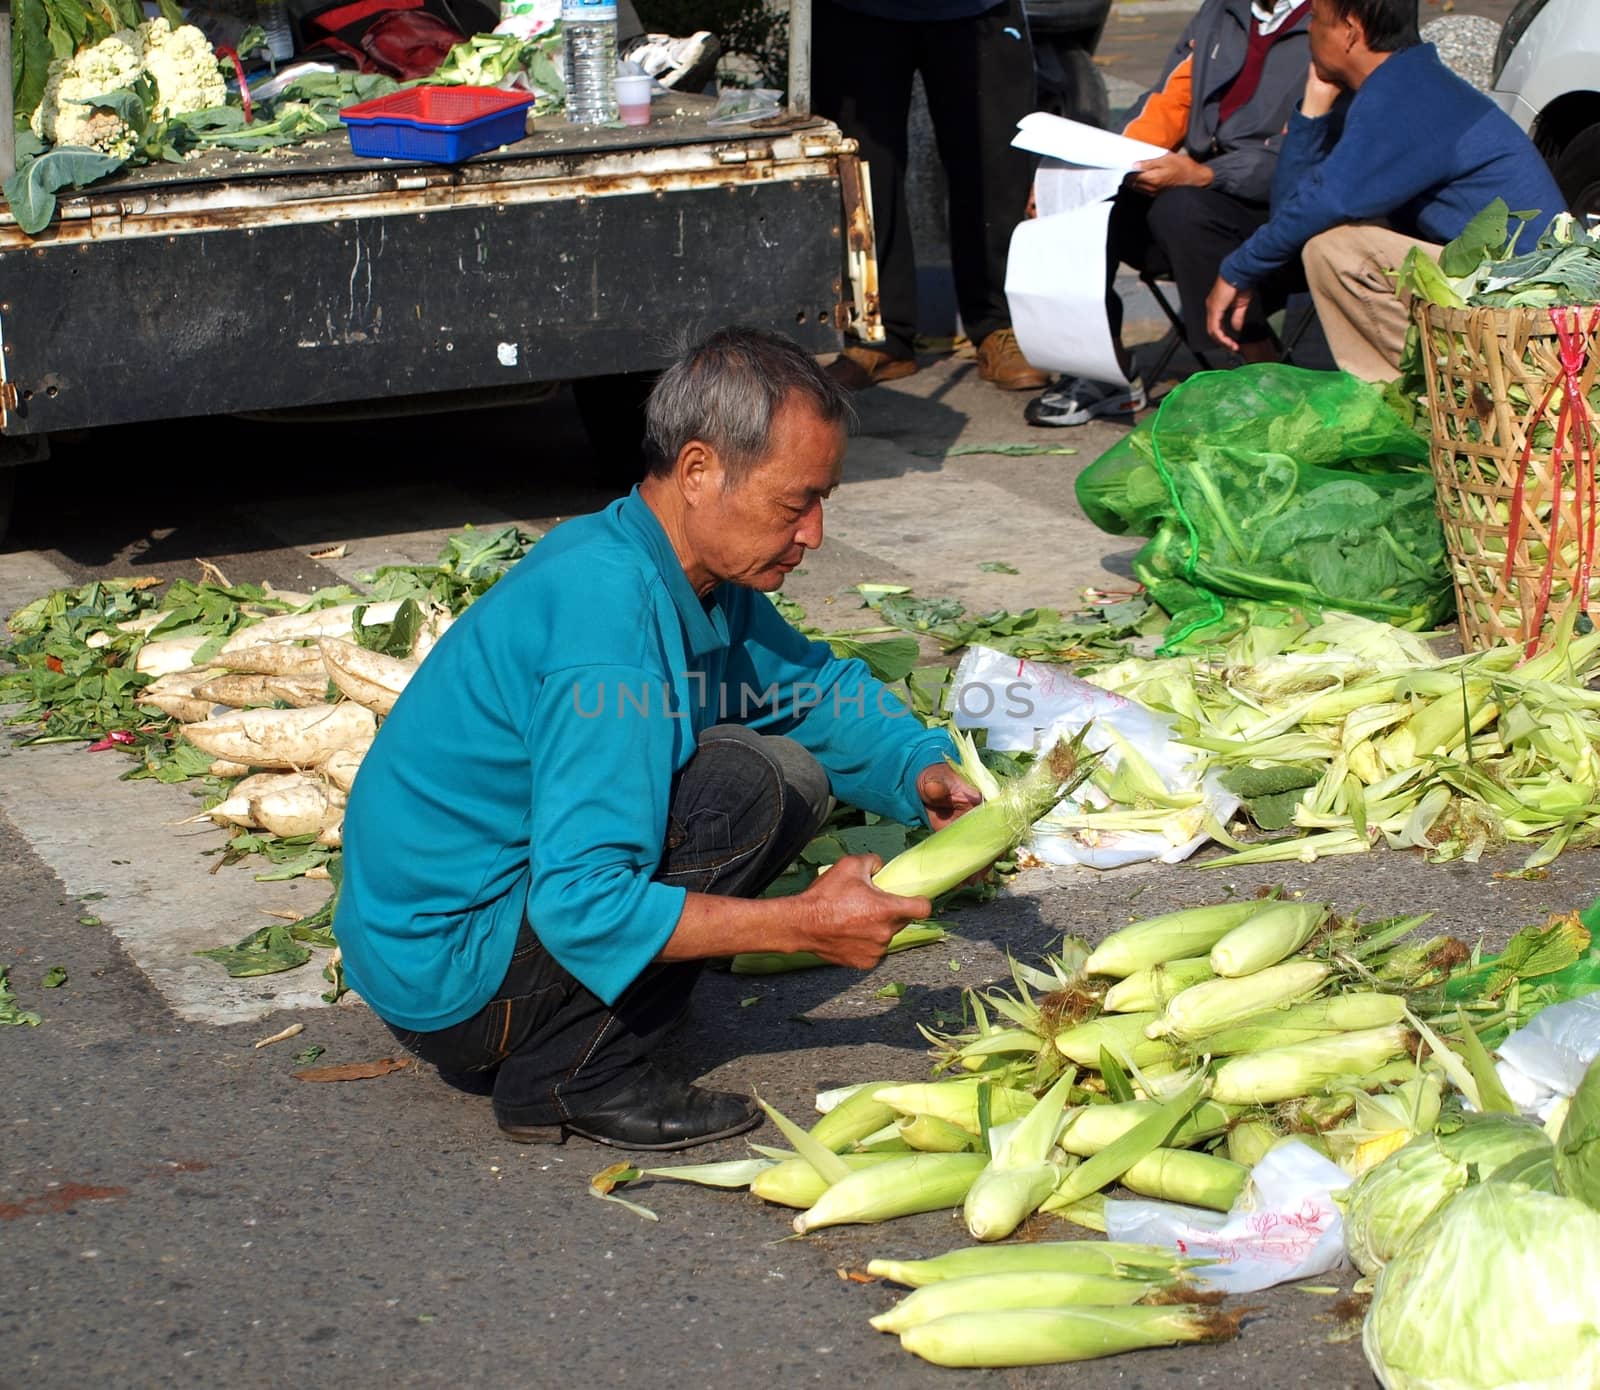 Choosing Corn at an Outdoor Market by shiyali